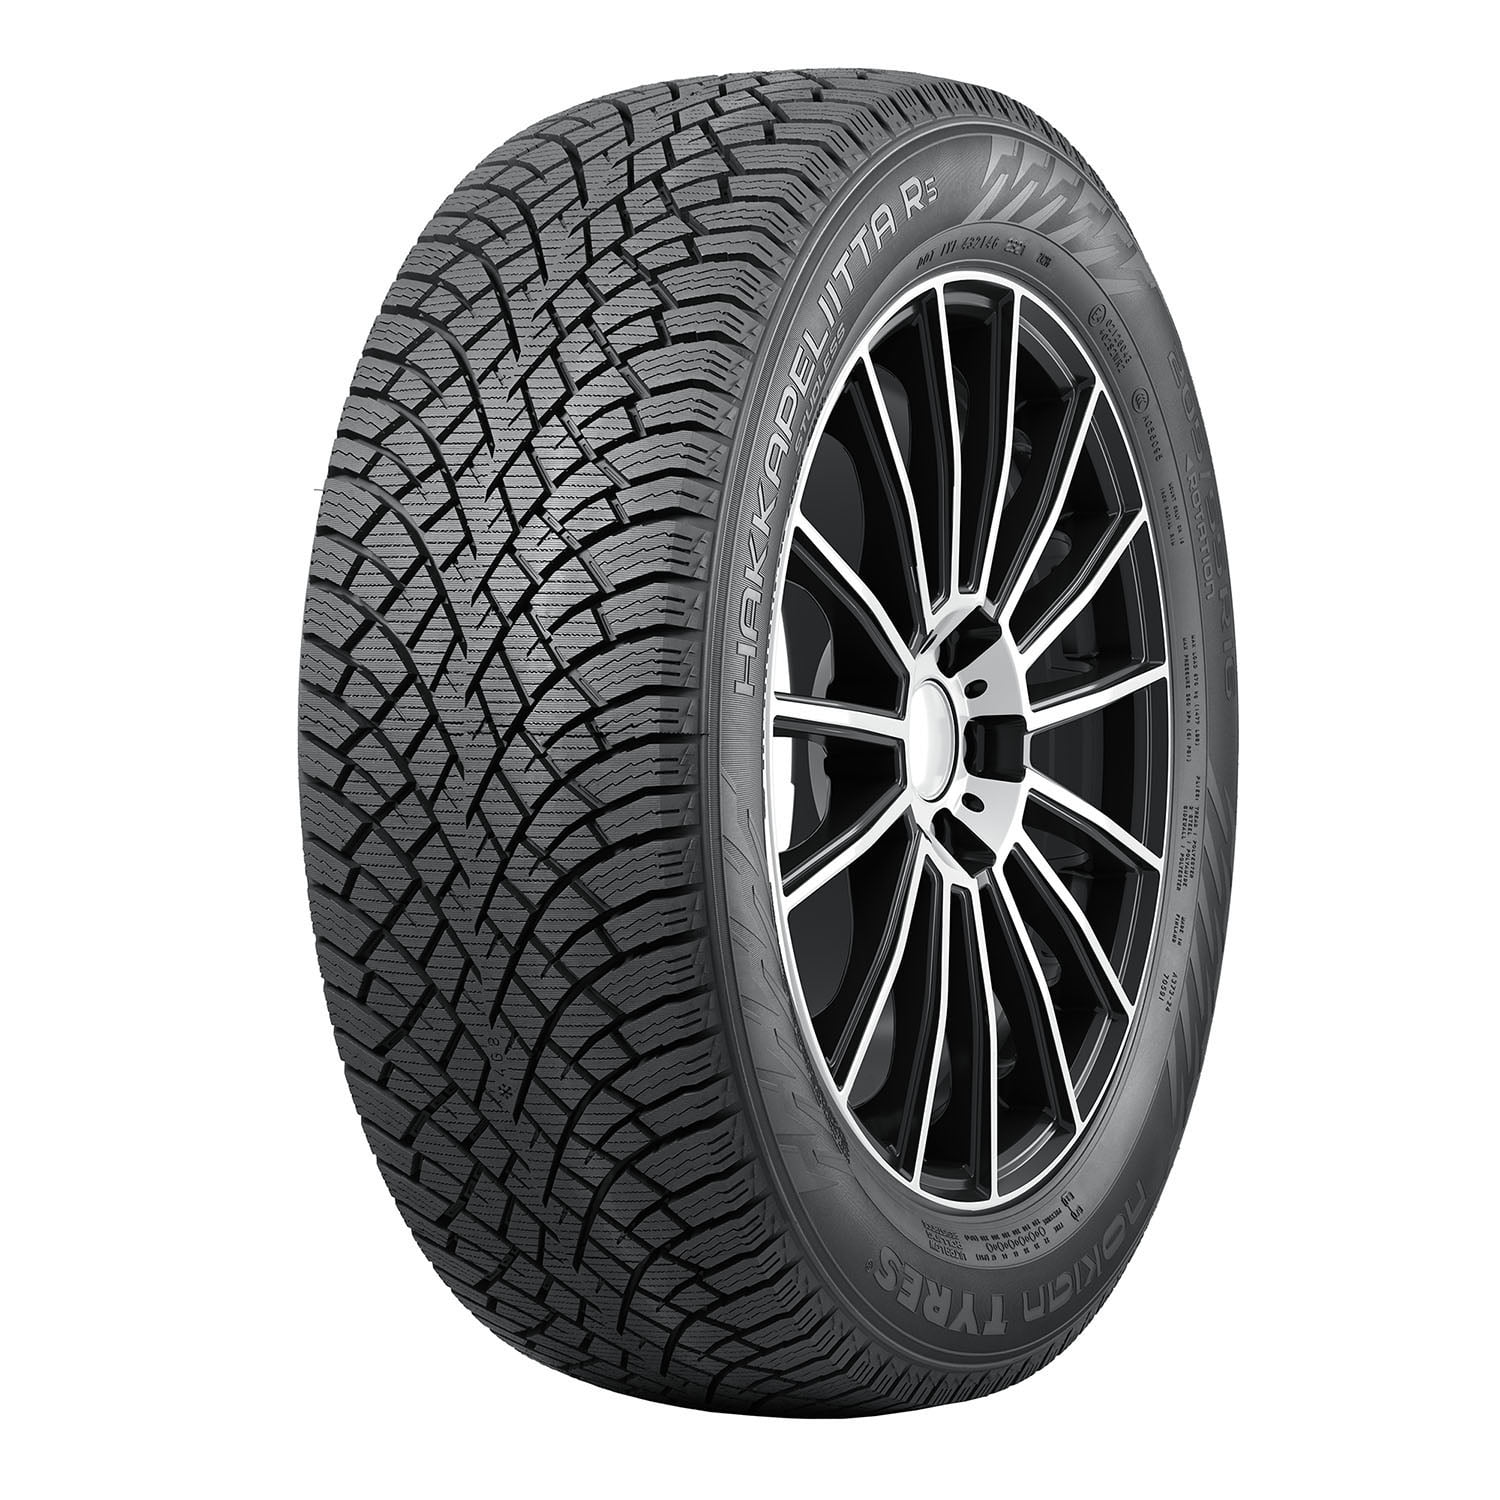 Nokian Hakkapeliitta R5 Winter 235/40R19 96T XL Passenger Tire Fits:  2015-17 Chrysler 200 C, 2023 Tesla 3 Long Range